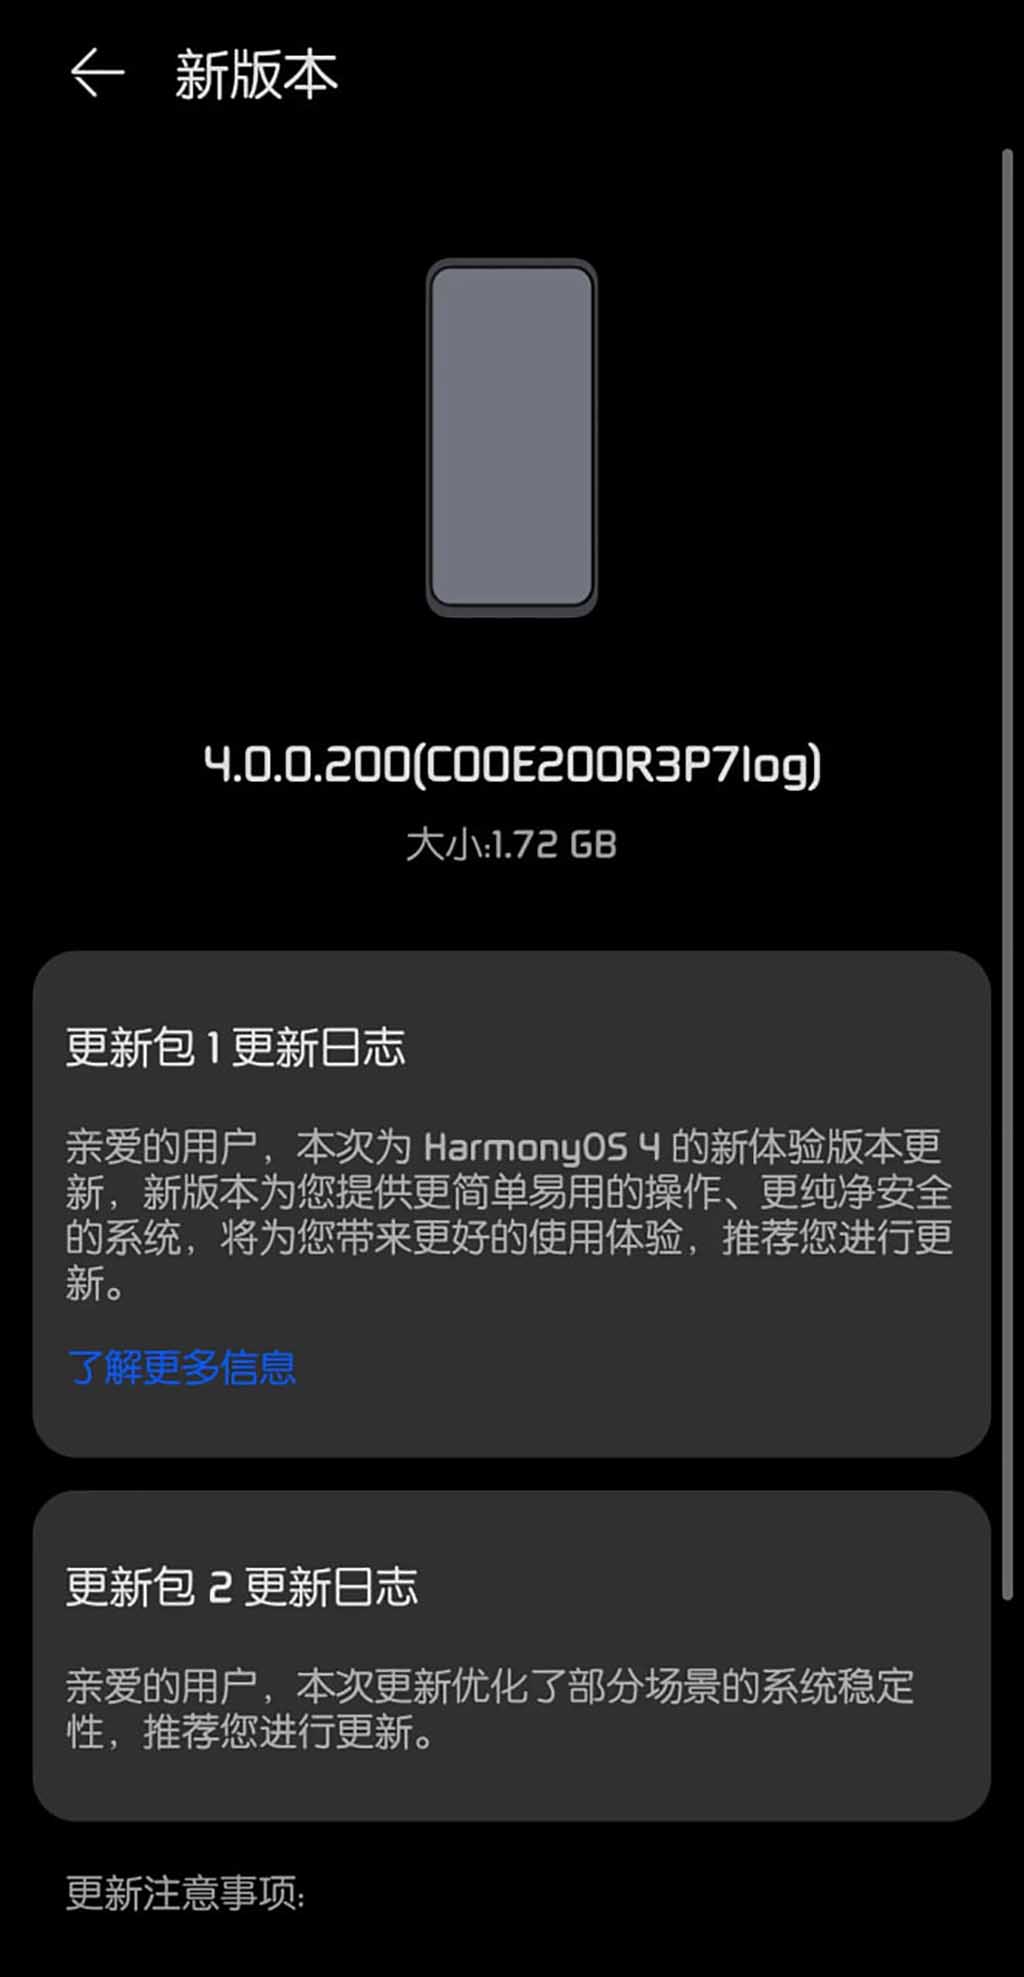 HarmonyOS 4.0.0.200 beta features